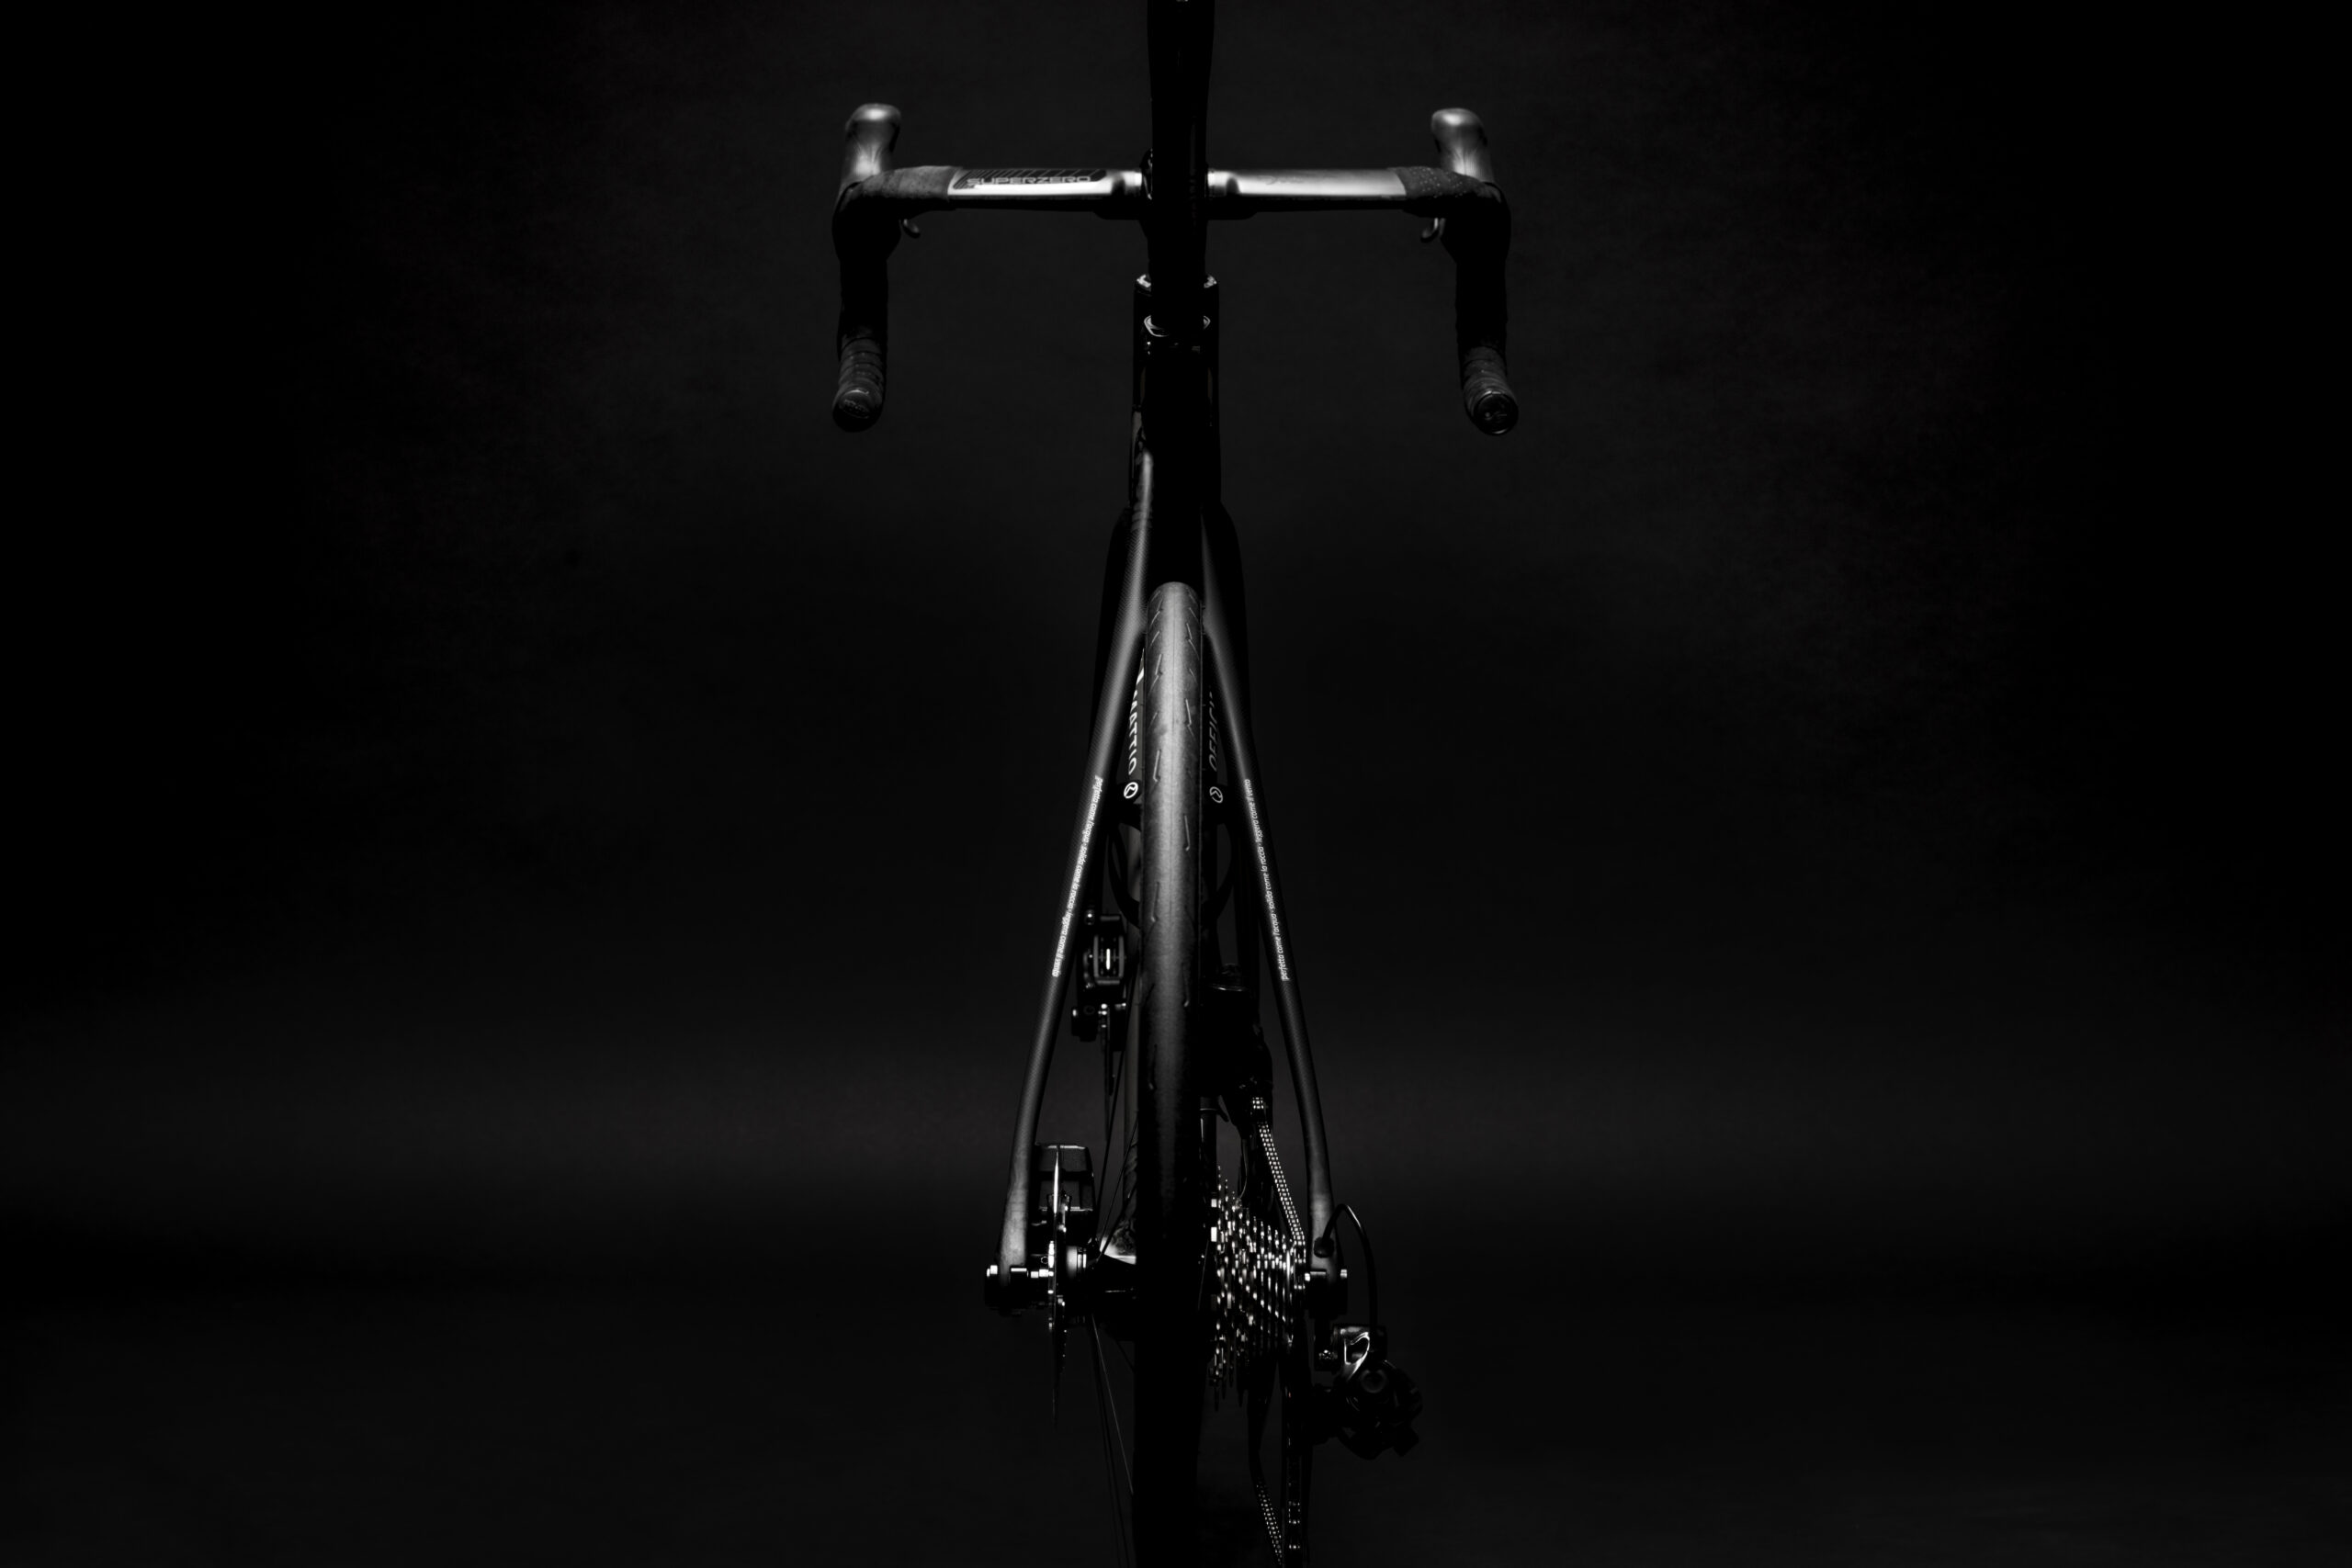 Bicicletta Officine Mattio modello SL X, produzione made in italy fotografia dettaglio retro